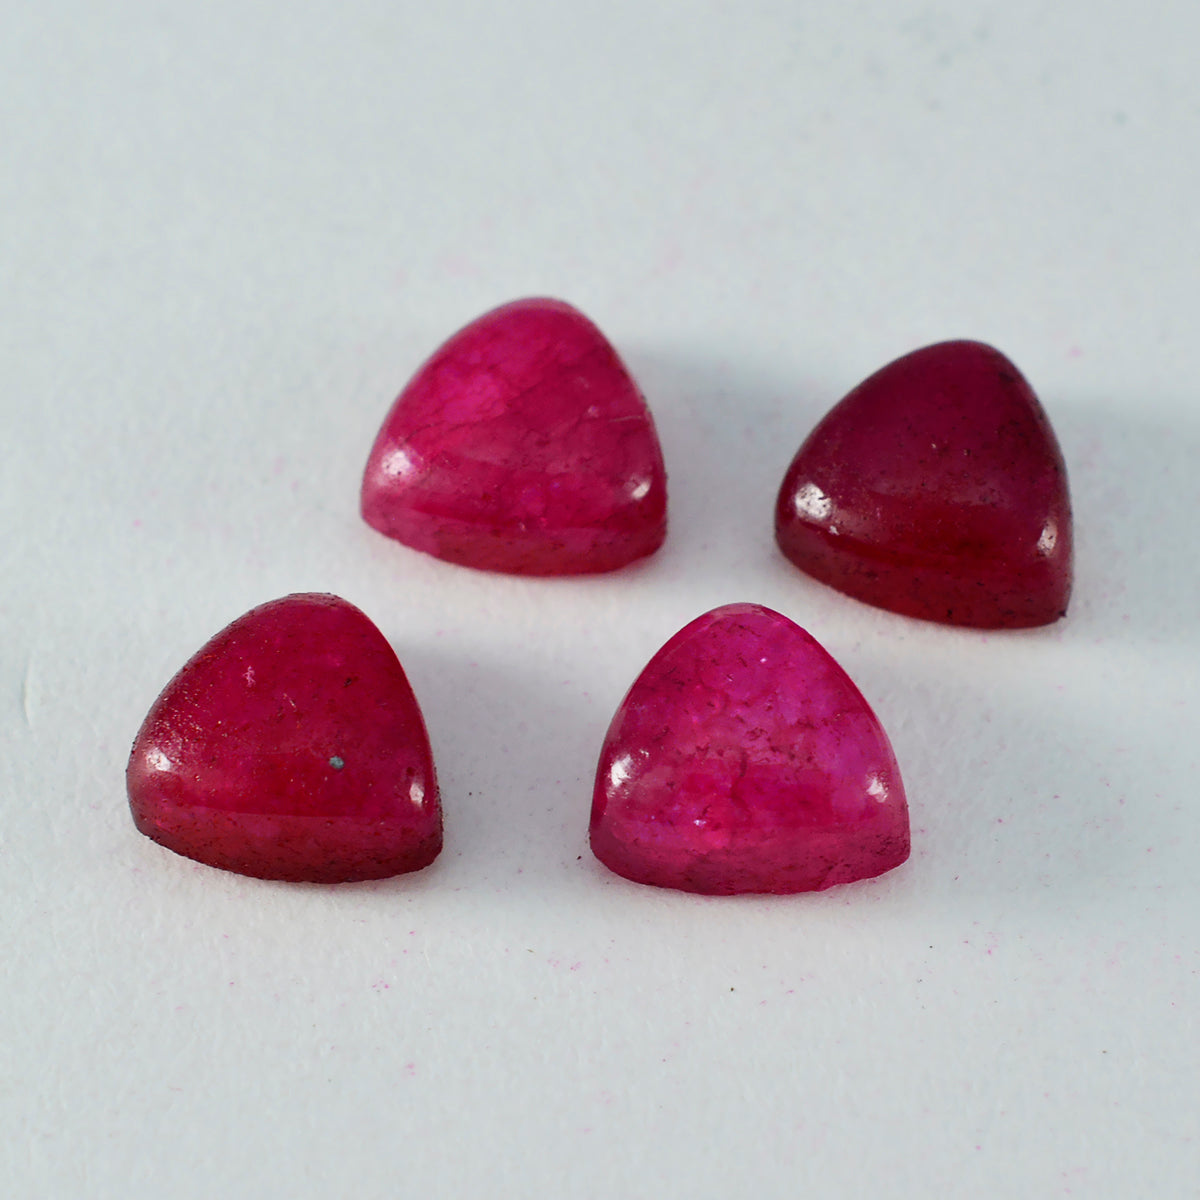 Riyogems 1 Stück roter Jaspis-Cabochon, 7 x 7 mm, Billionenform, hübscher, hochwertiger loser Stein